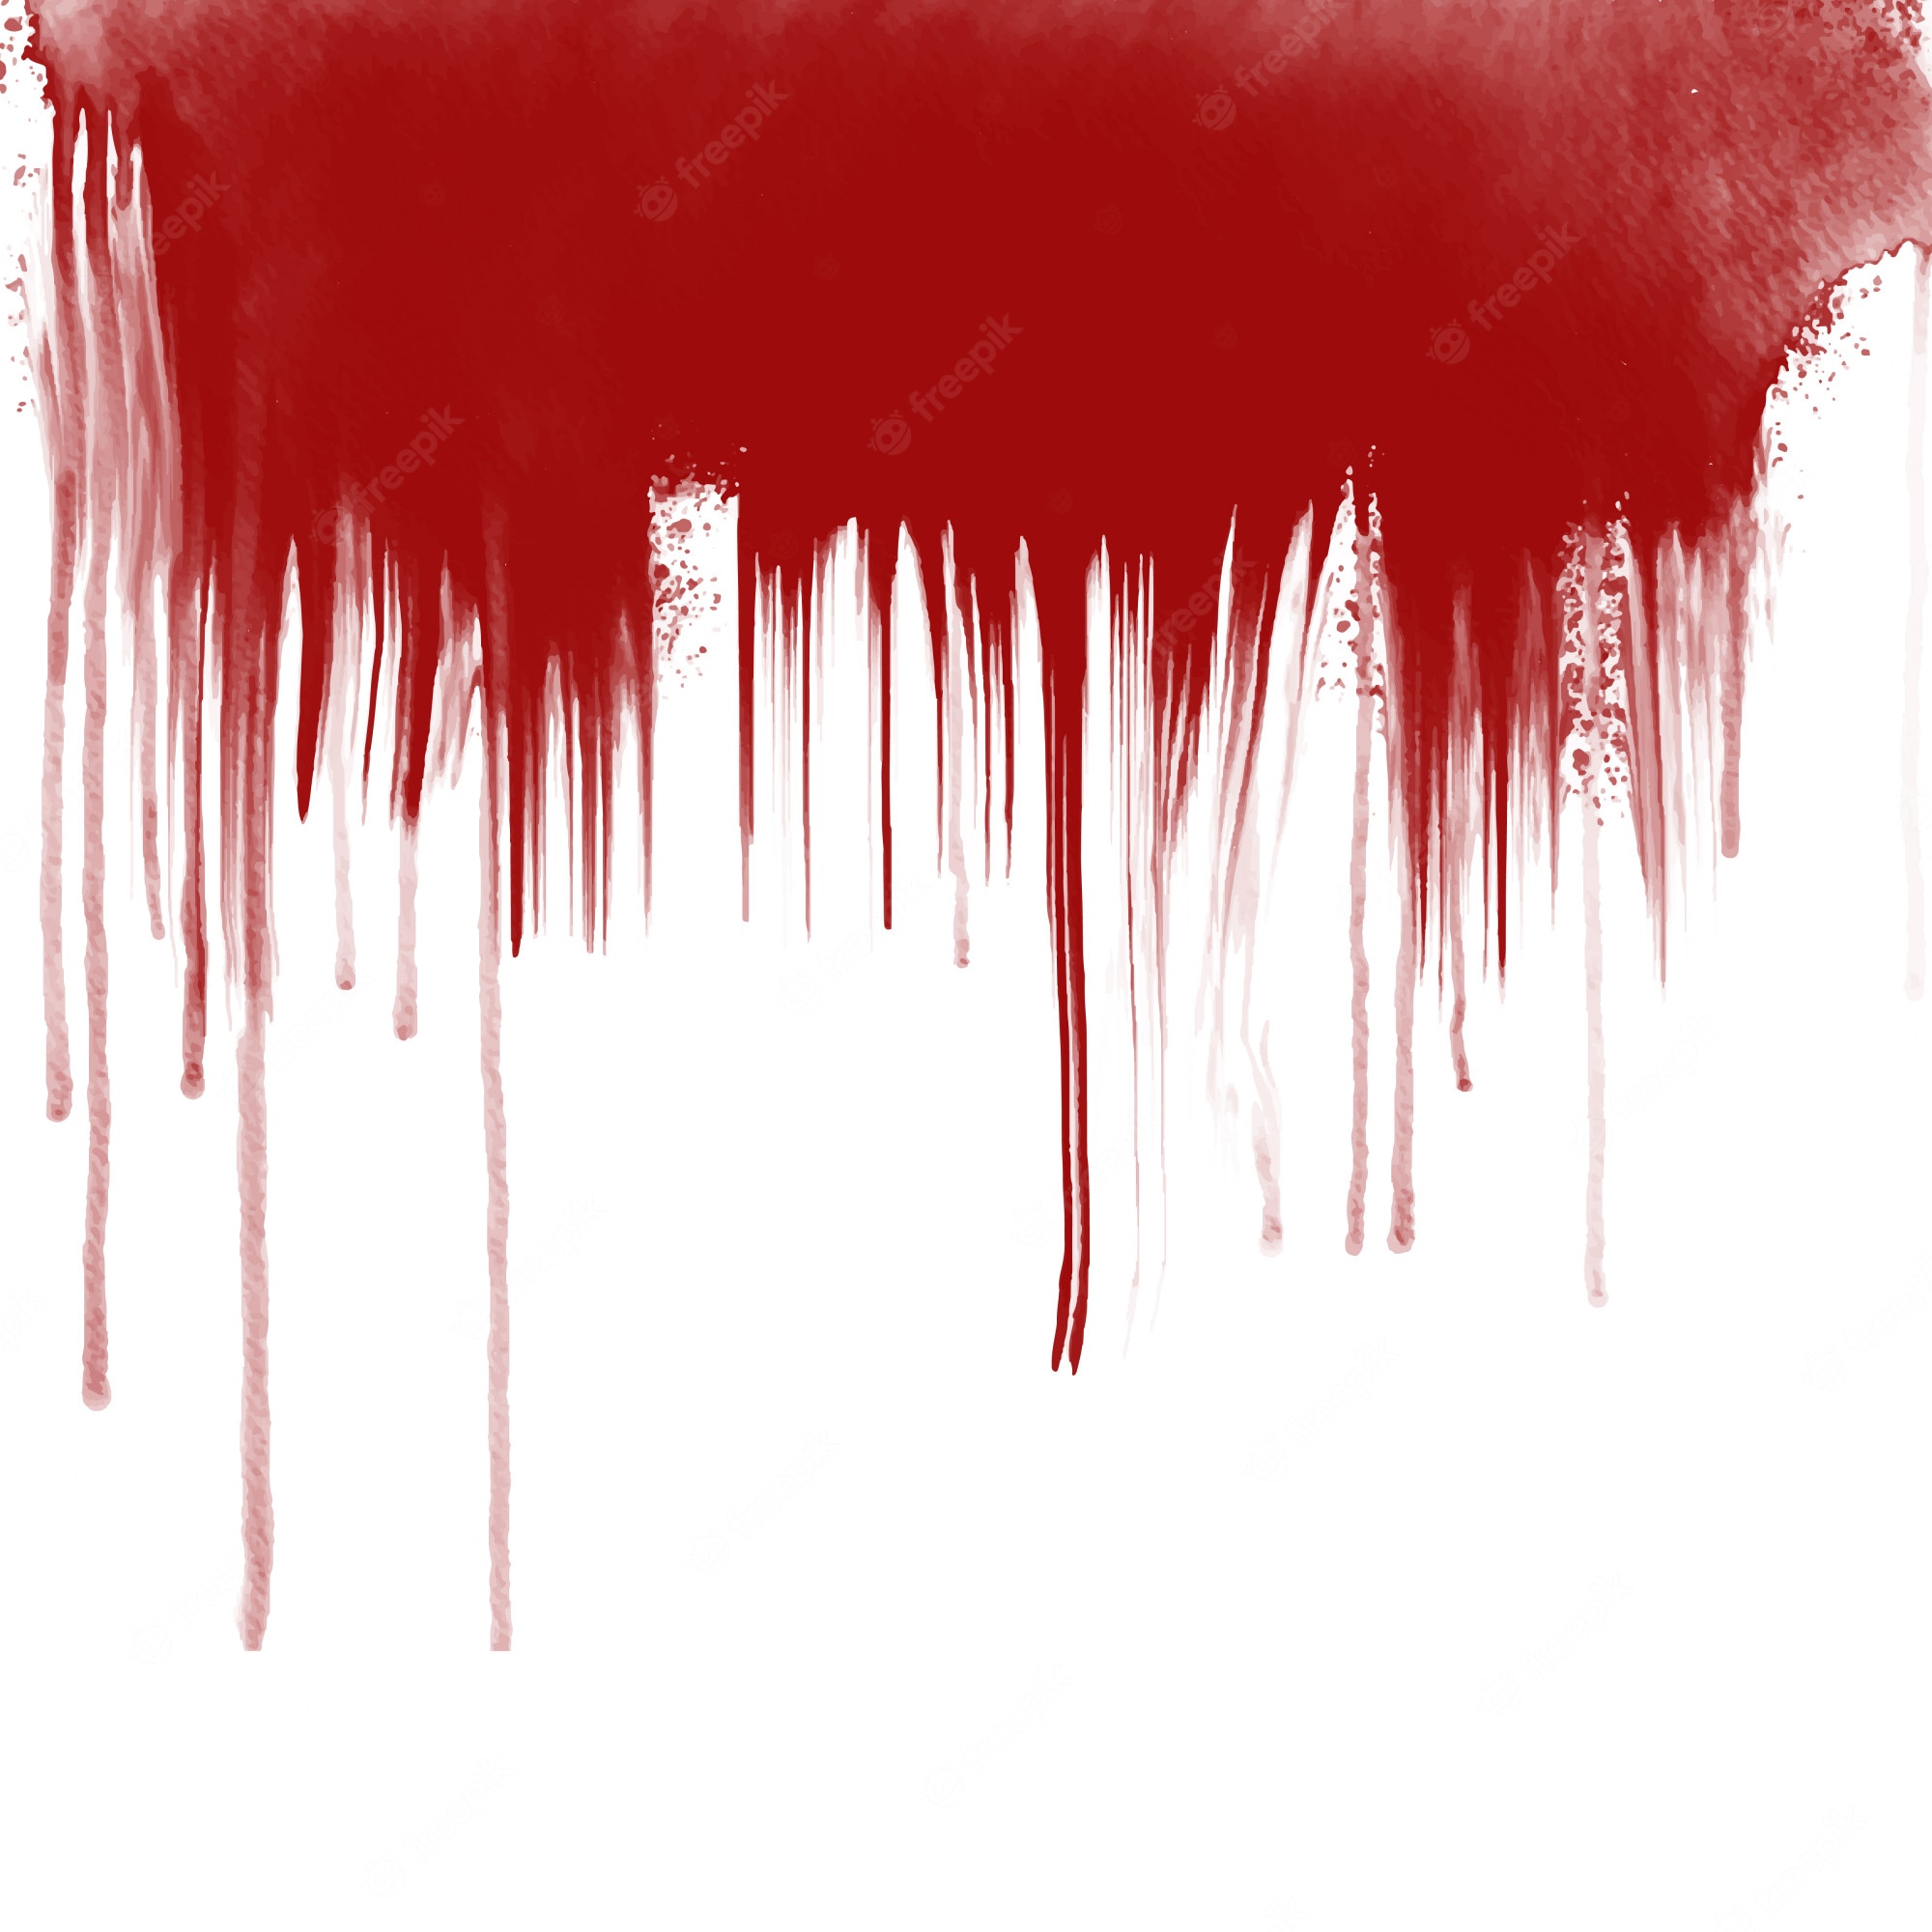 Blood Splatter Image